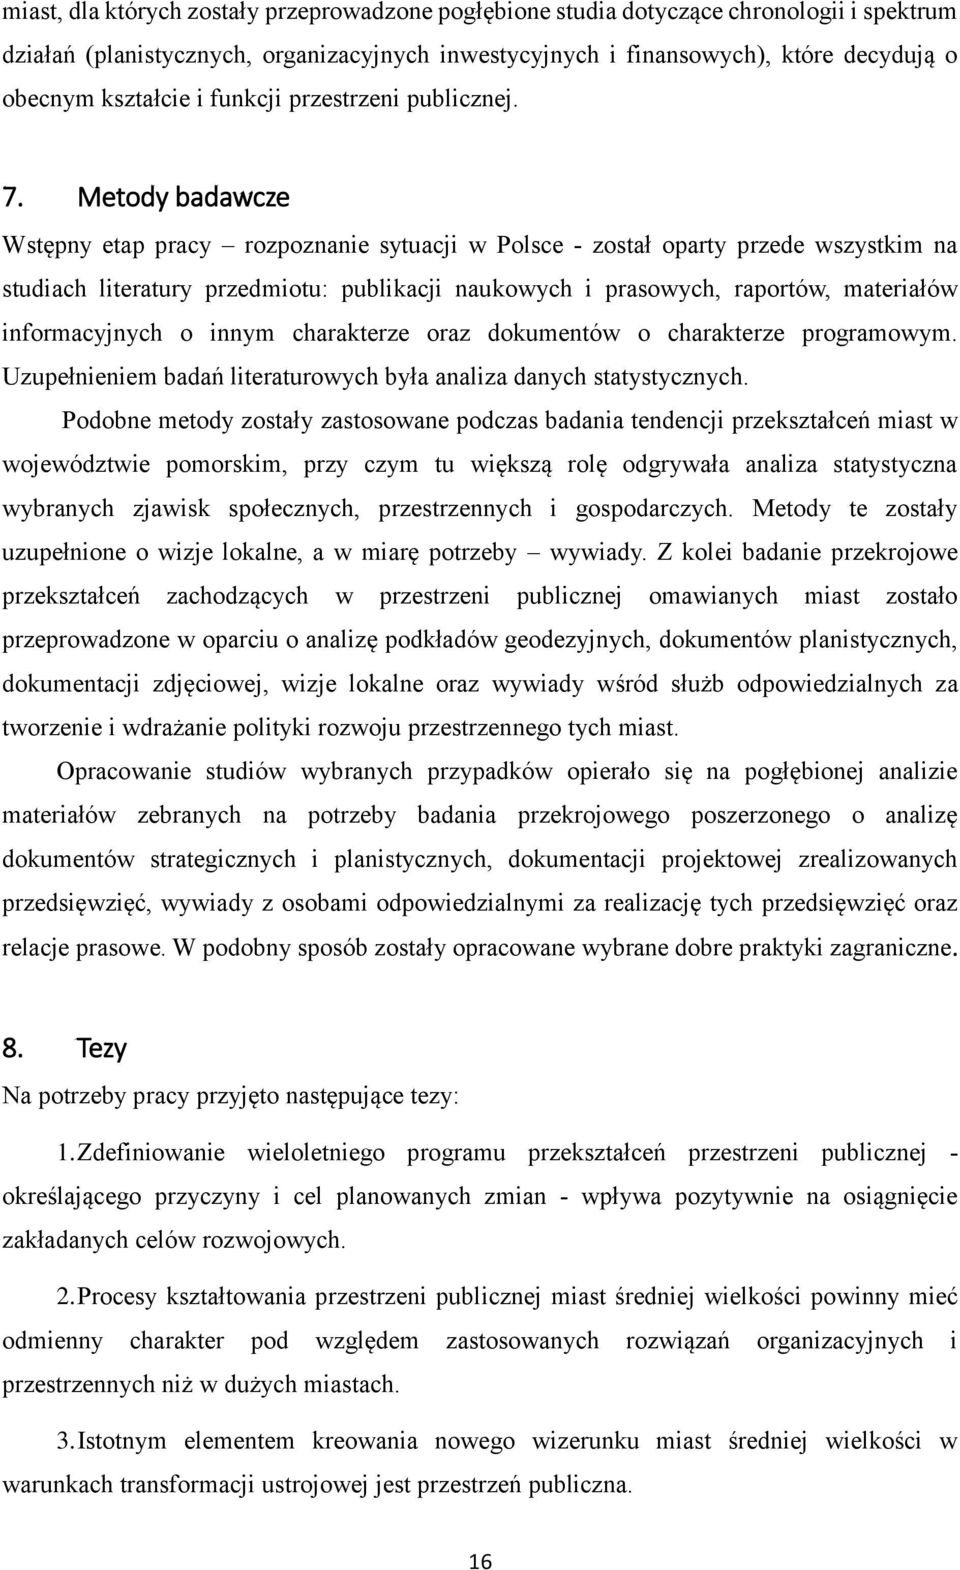 Metody badawcze Wstępny etap pracy rozpoznanie sytuacji w Polsce - został oparty przede wszystkim na studiach literatury przedmiotu: publikacji naukowych i prasowych, raportów, materiałów